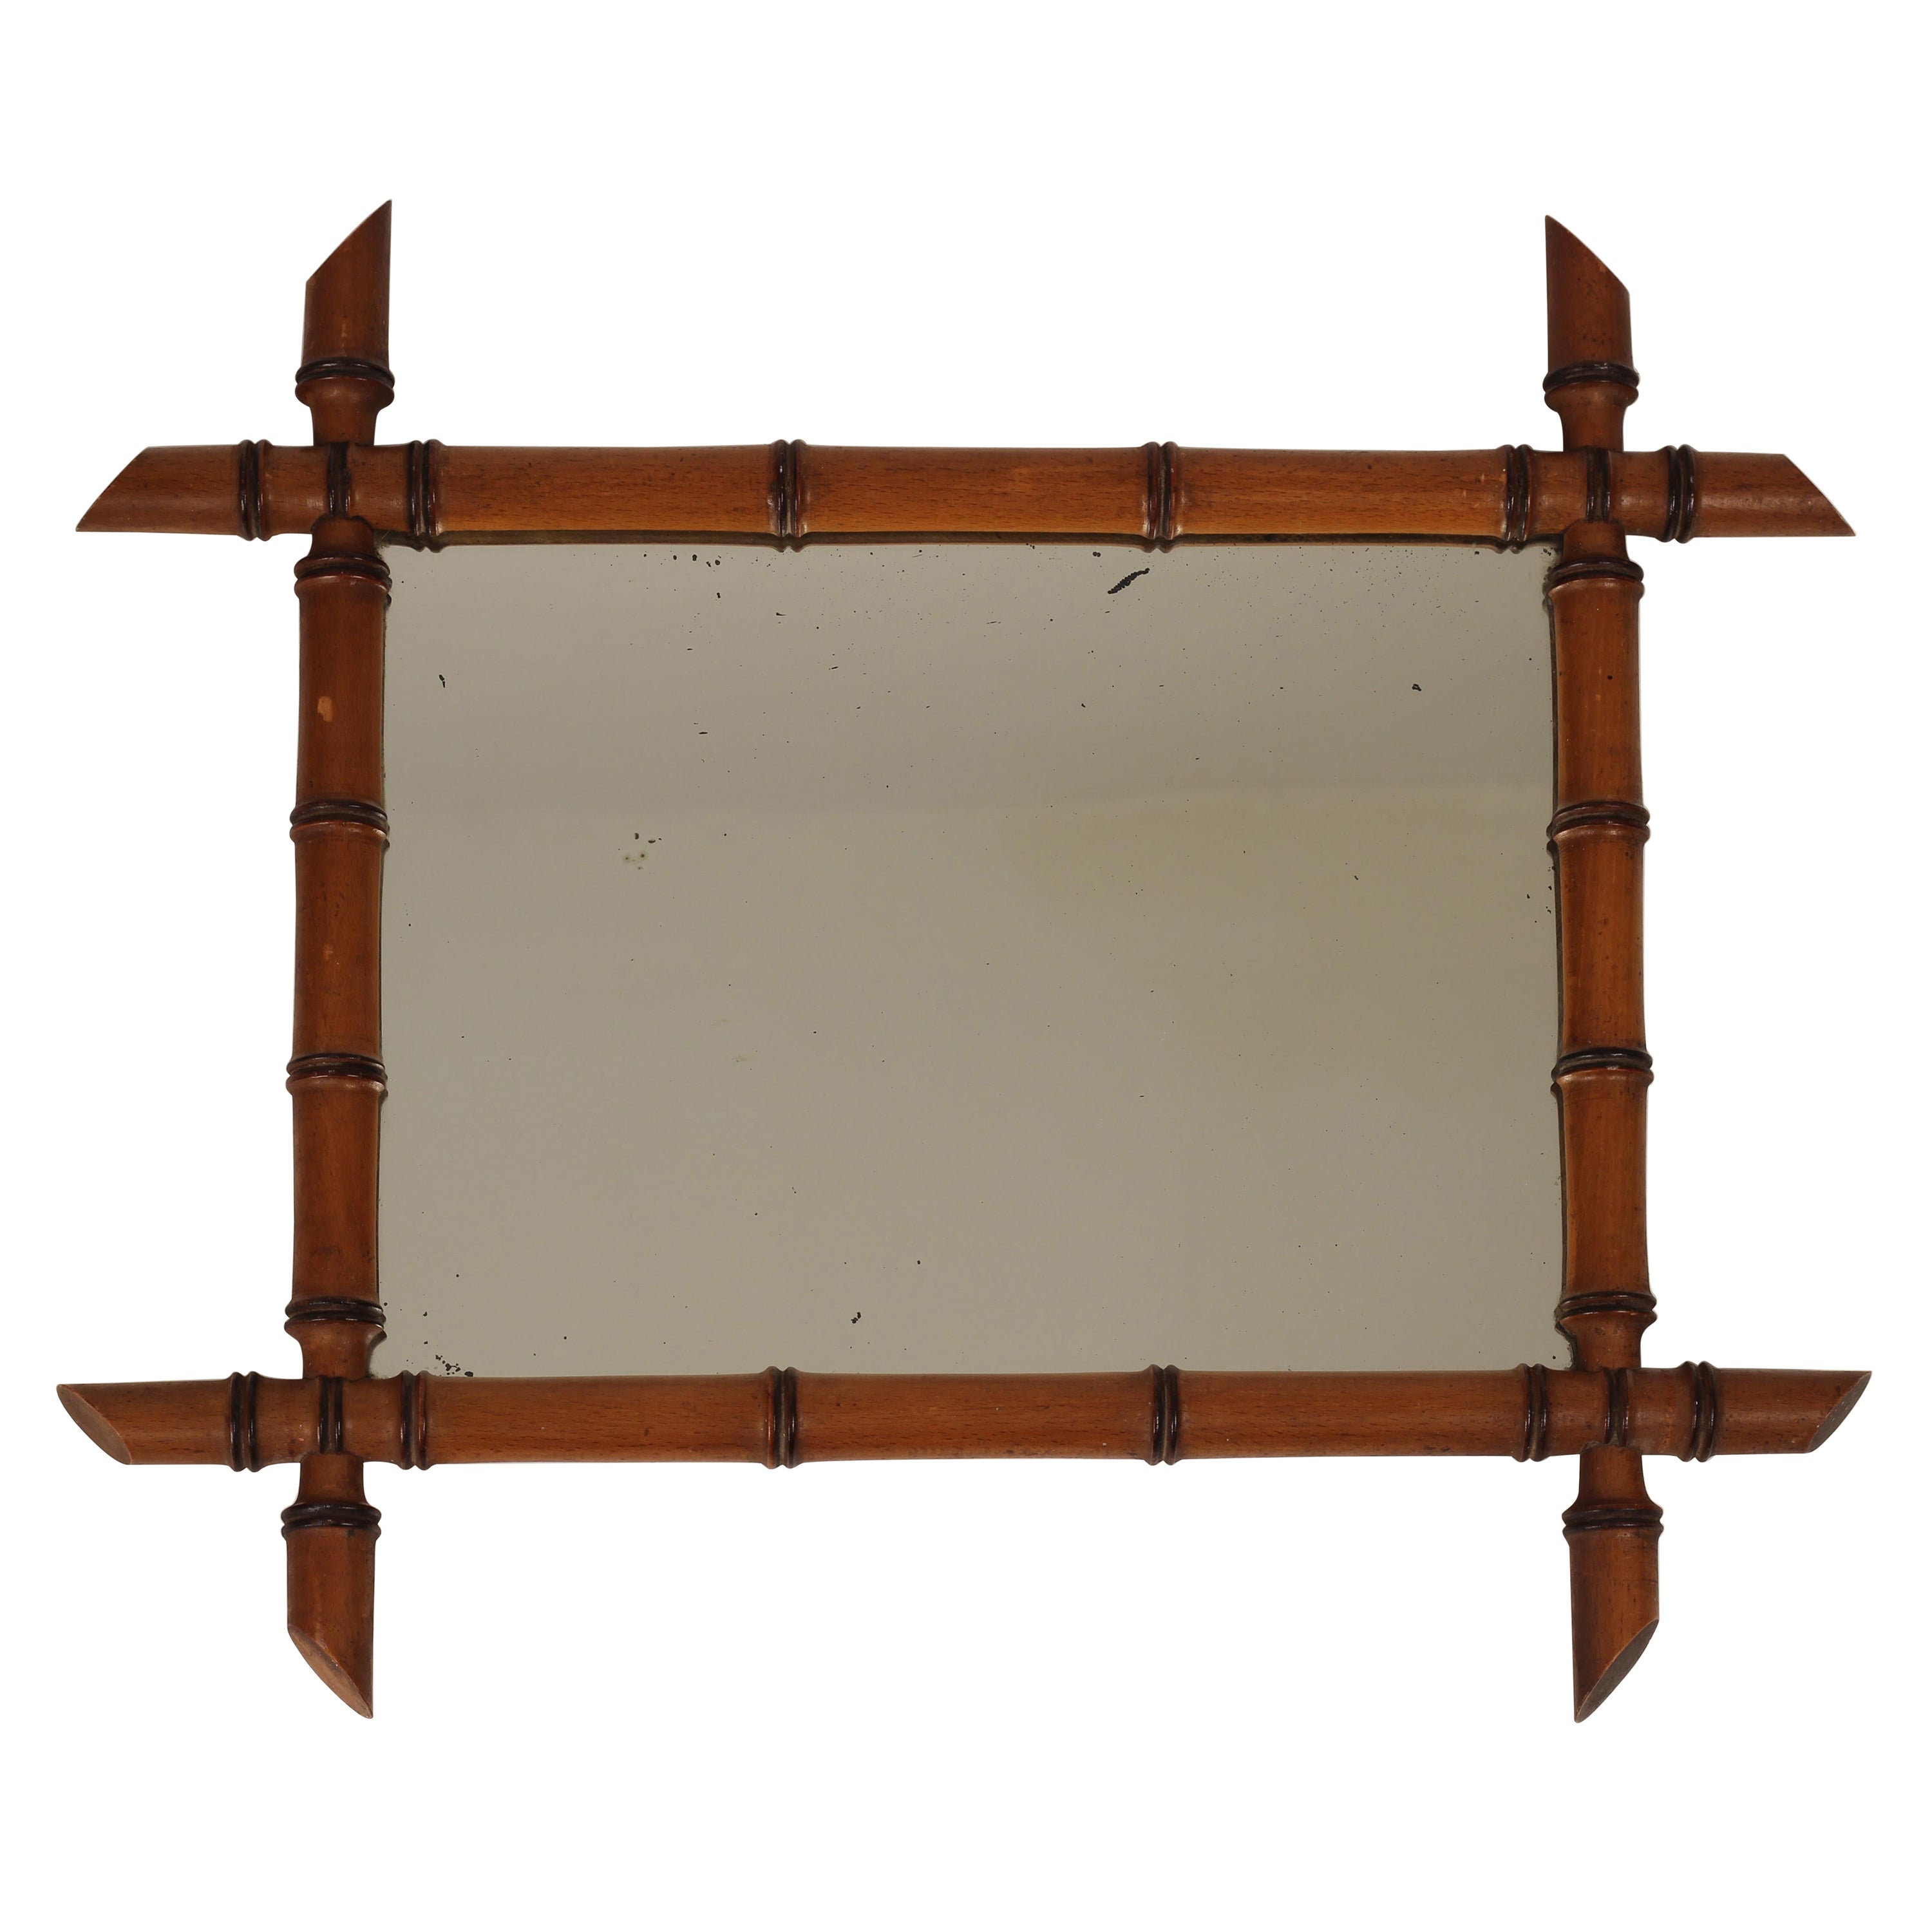 Spiegel im Boho-Chic-Stil mit Rahmen aus Kunstbambus und Walnussholz, hergestellt in Frankreich Mitte der 1800er Jahre